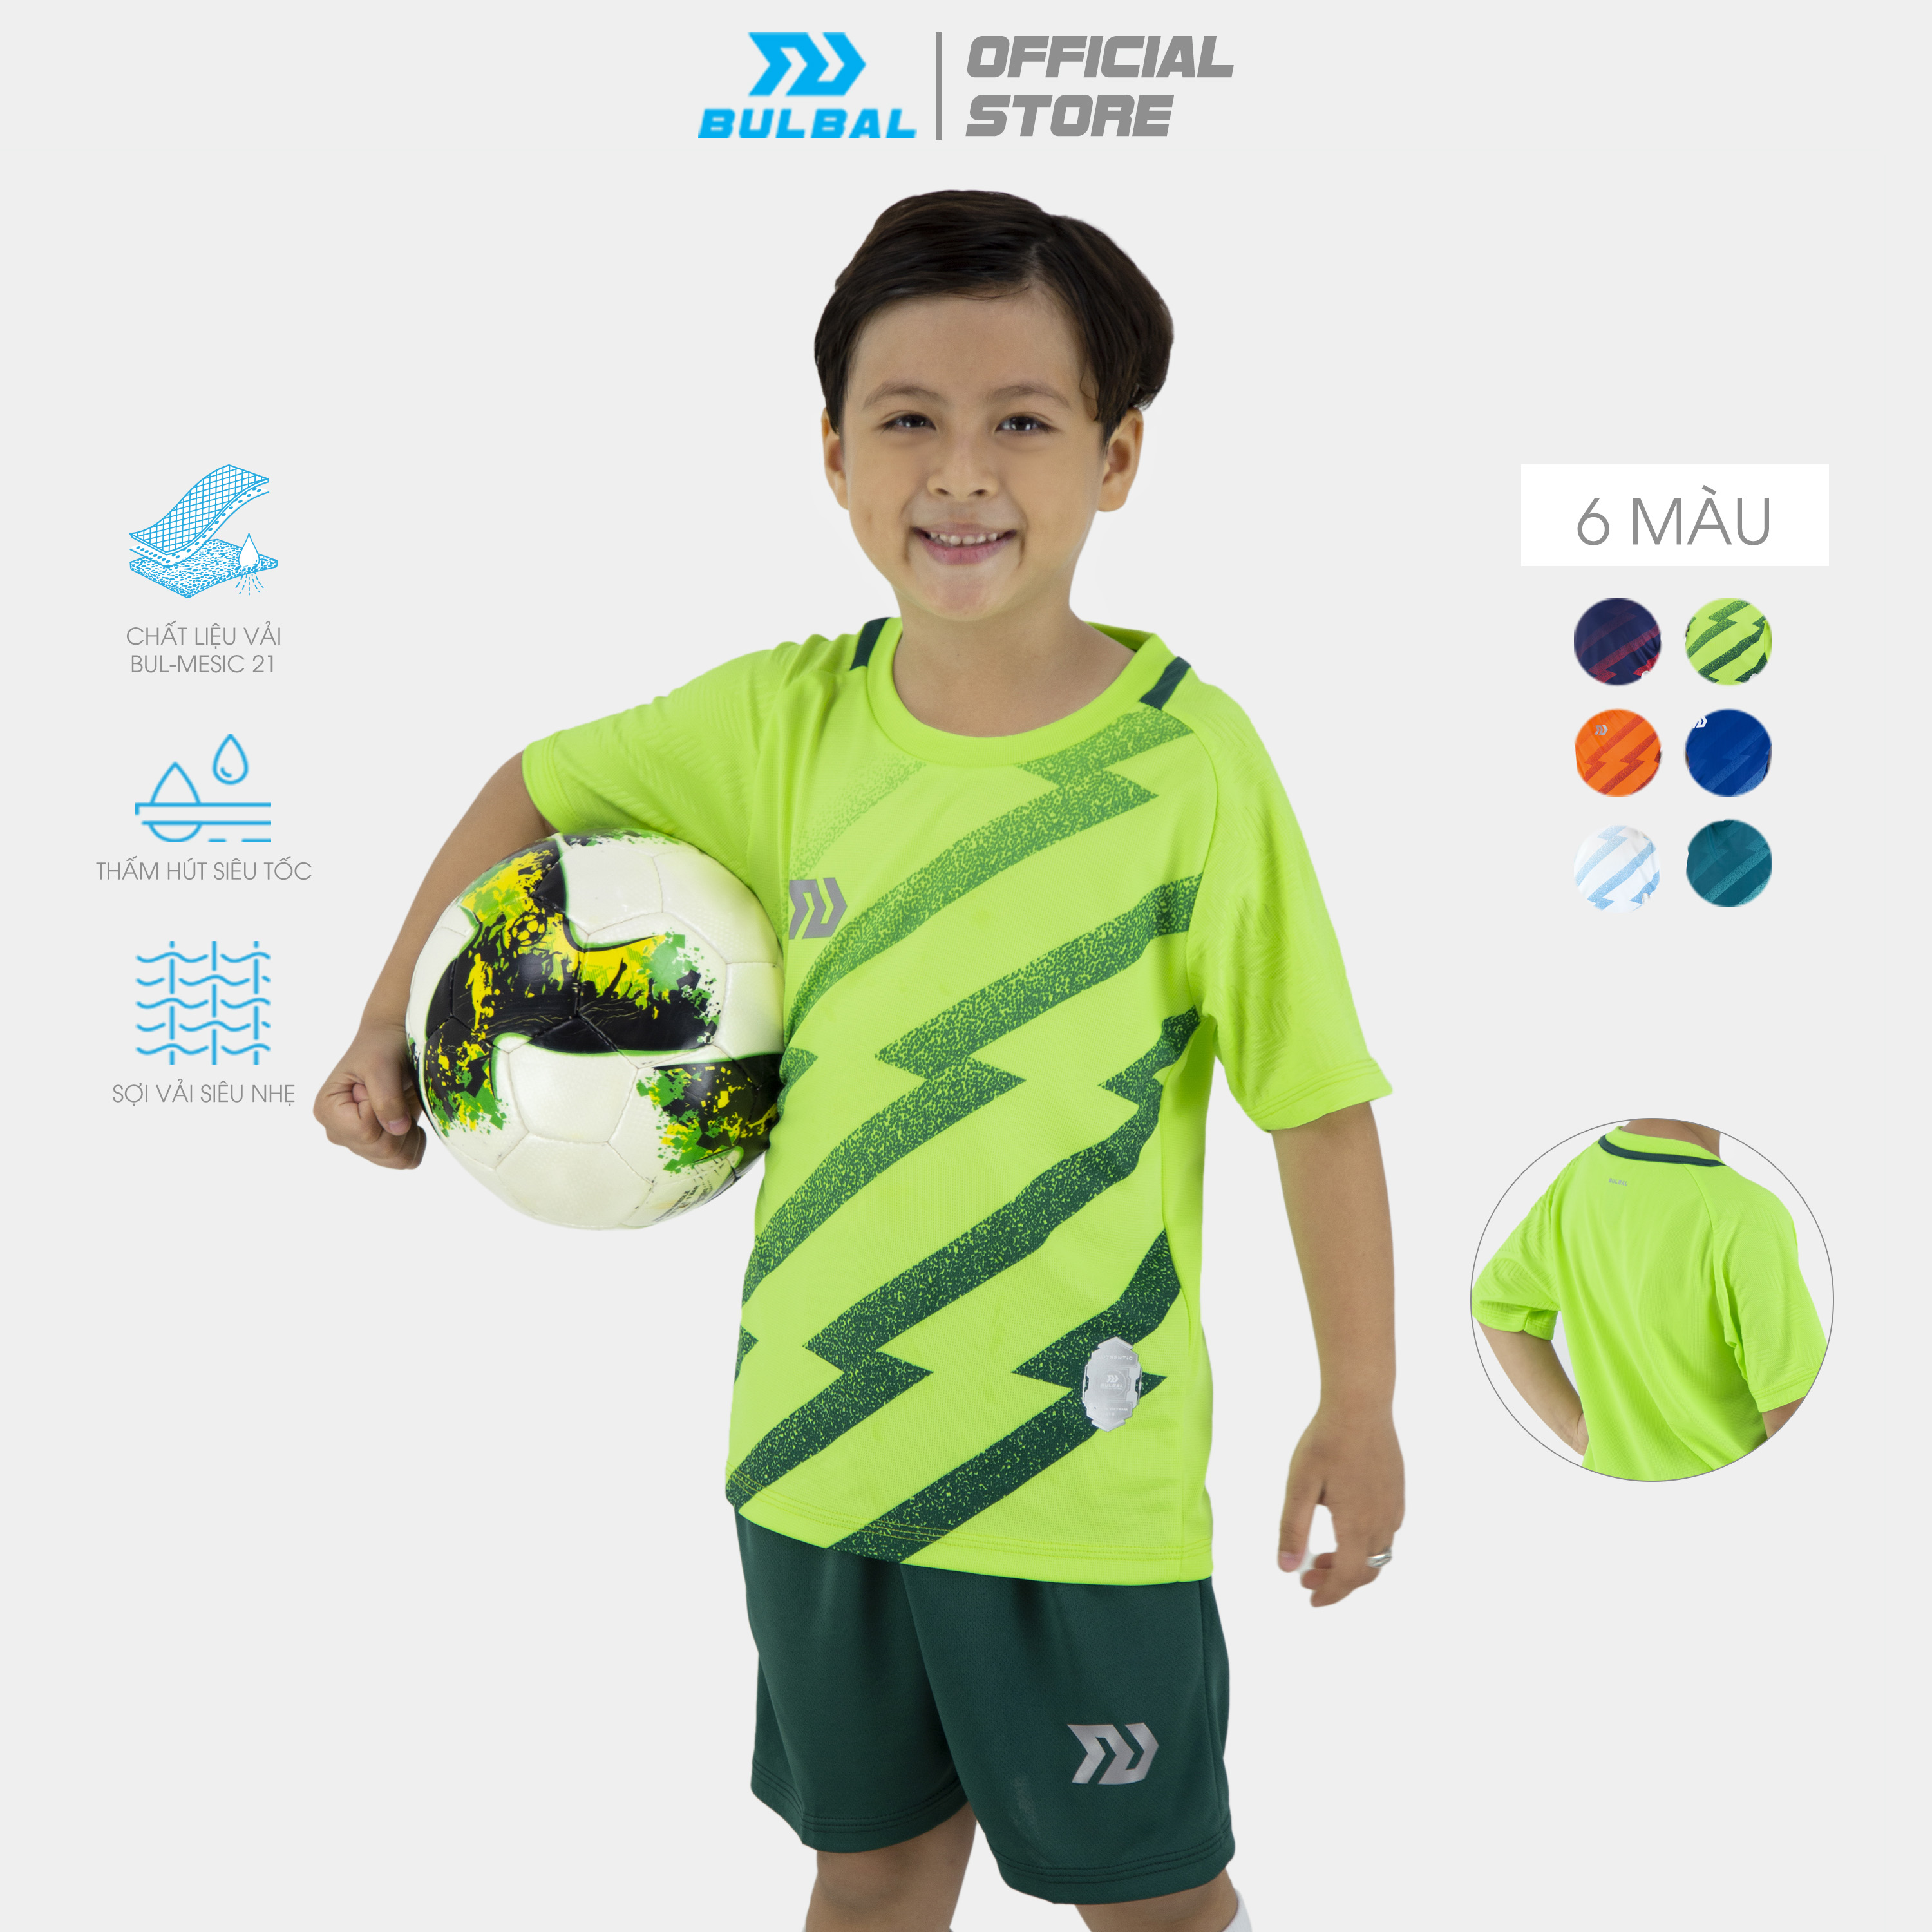 Bộ quần áo bóng đá trẻ em Bulbal Flash cao cấp, chất vải mè siêu thoáng mát, khử khuẩn hiệu quả